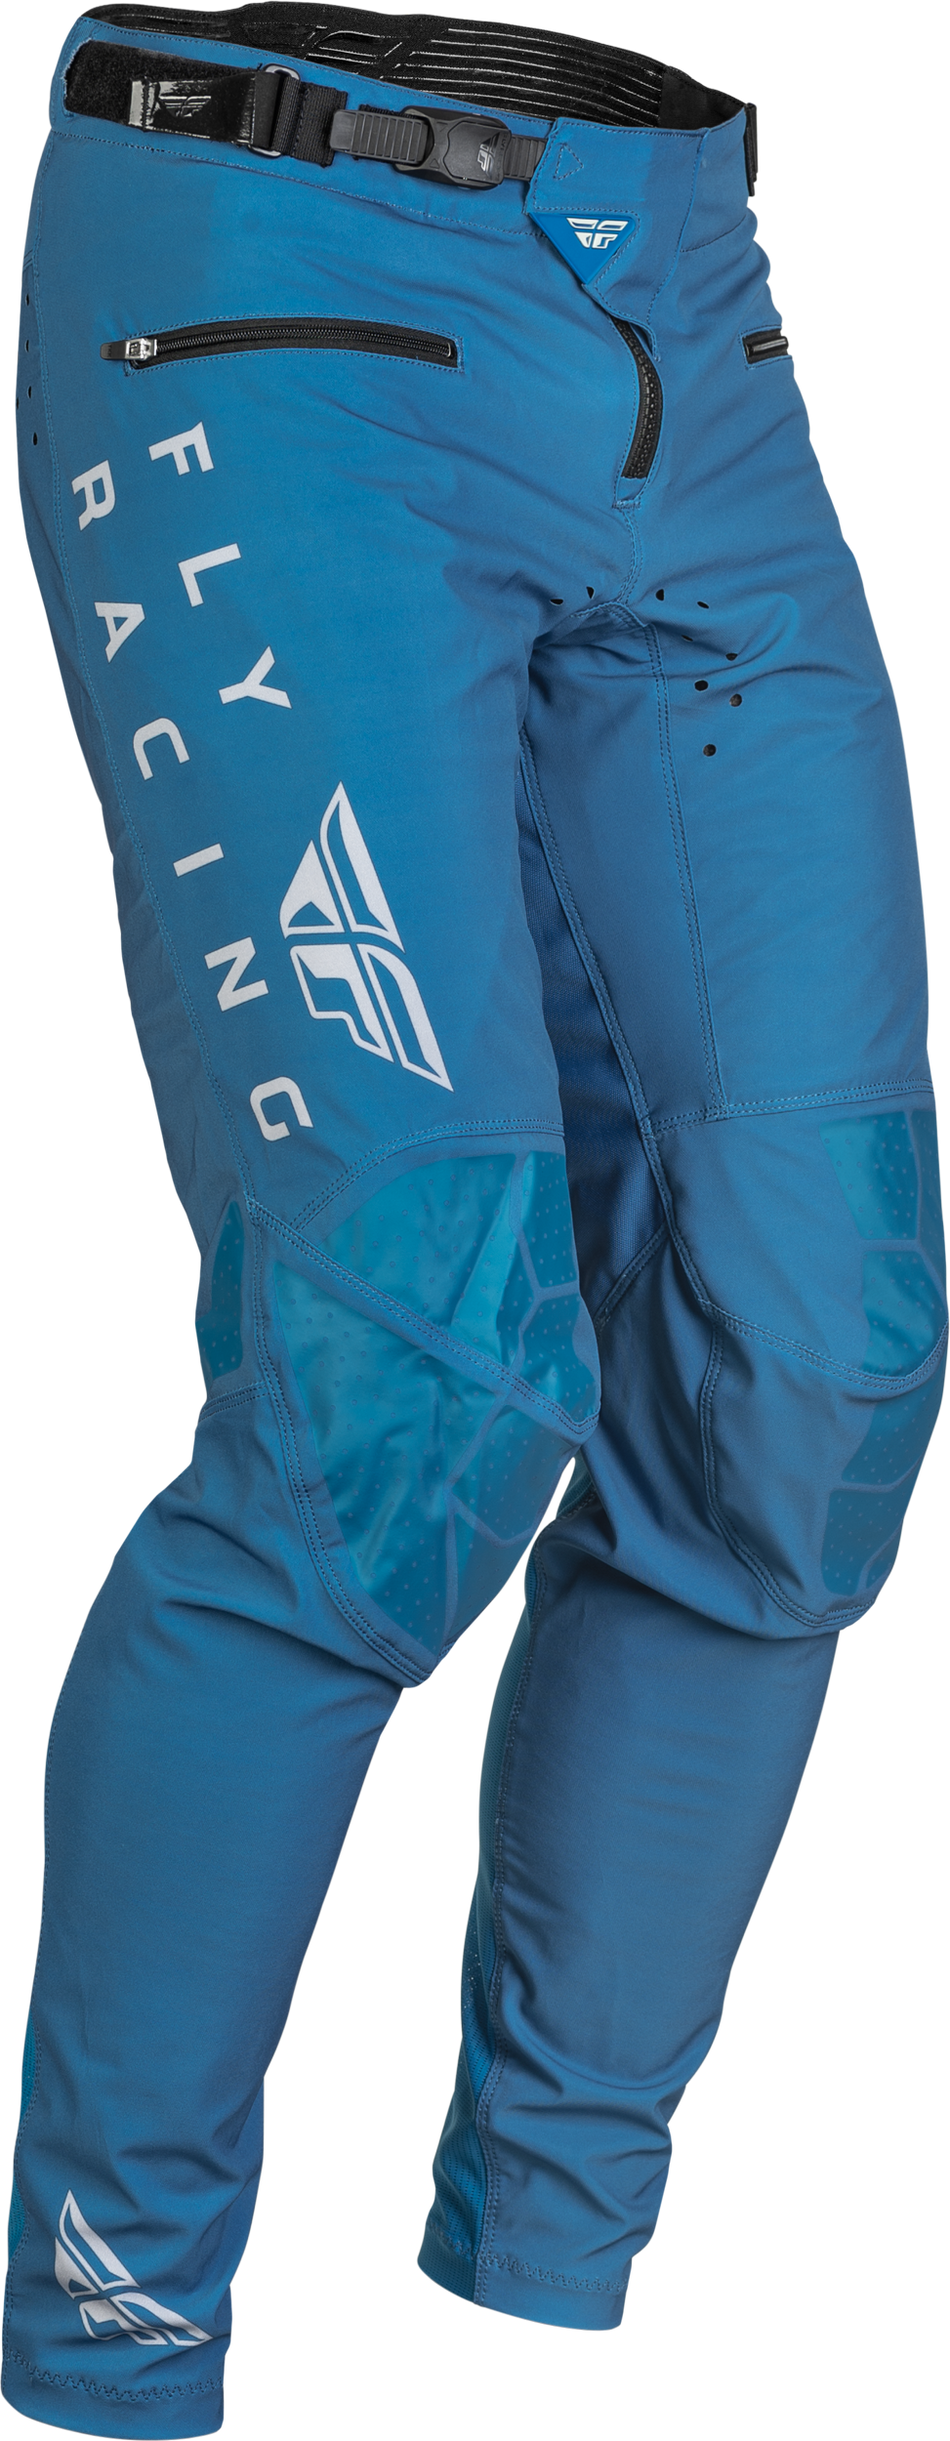 FLY RACING Radium Bicycle Pants Slate Blue/Grey Sz 36 376-04436